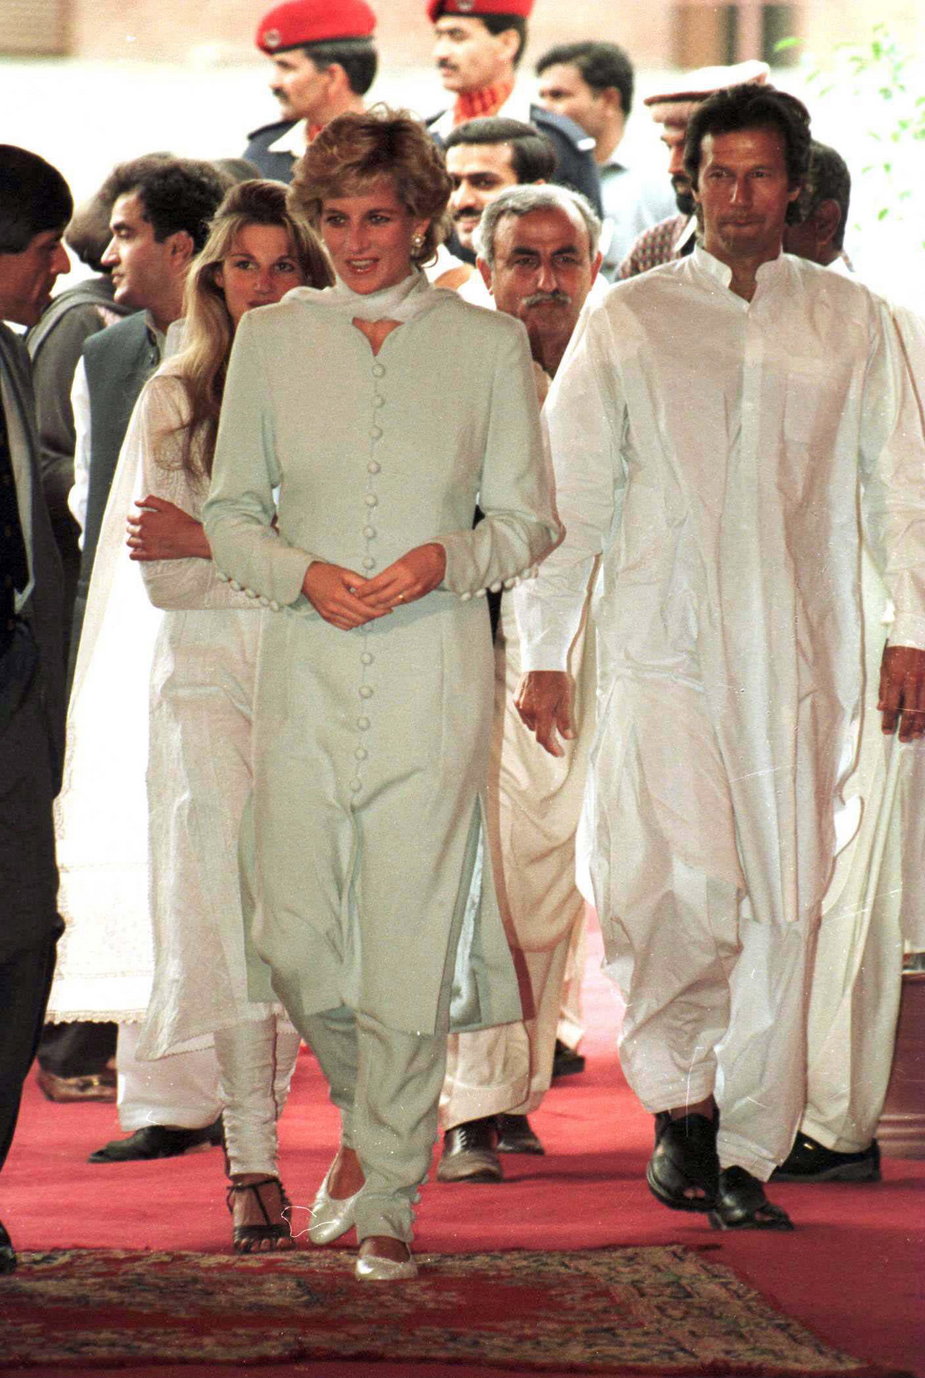 Księżna Diana w Pakistanie